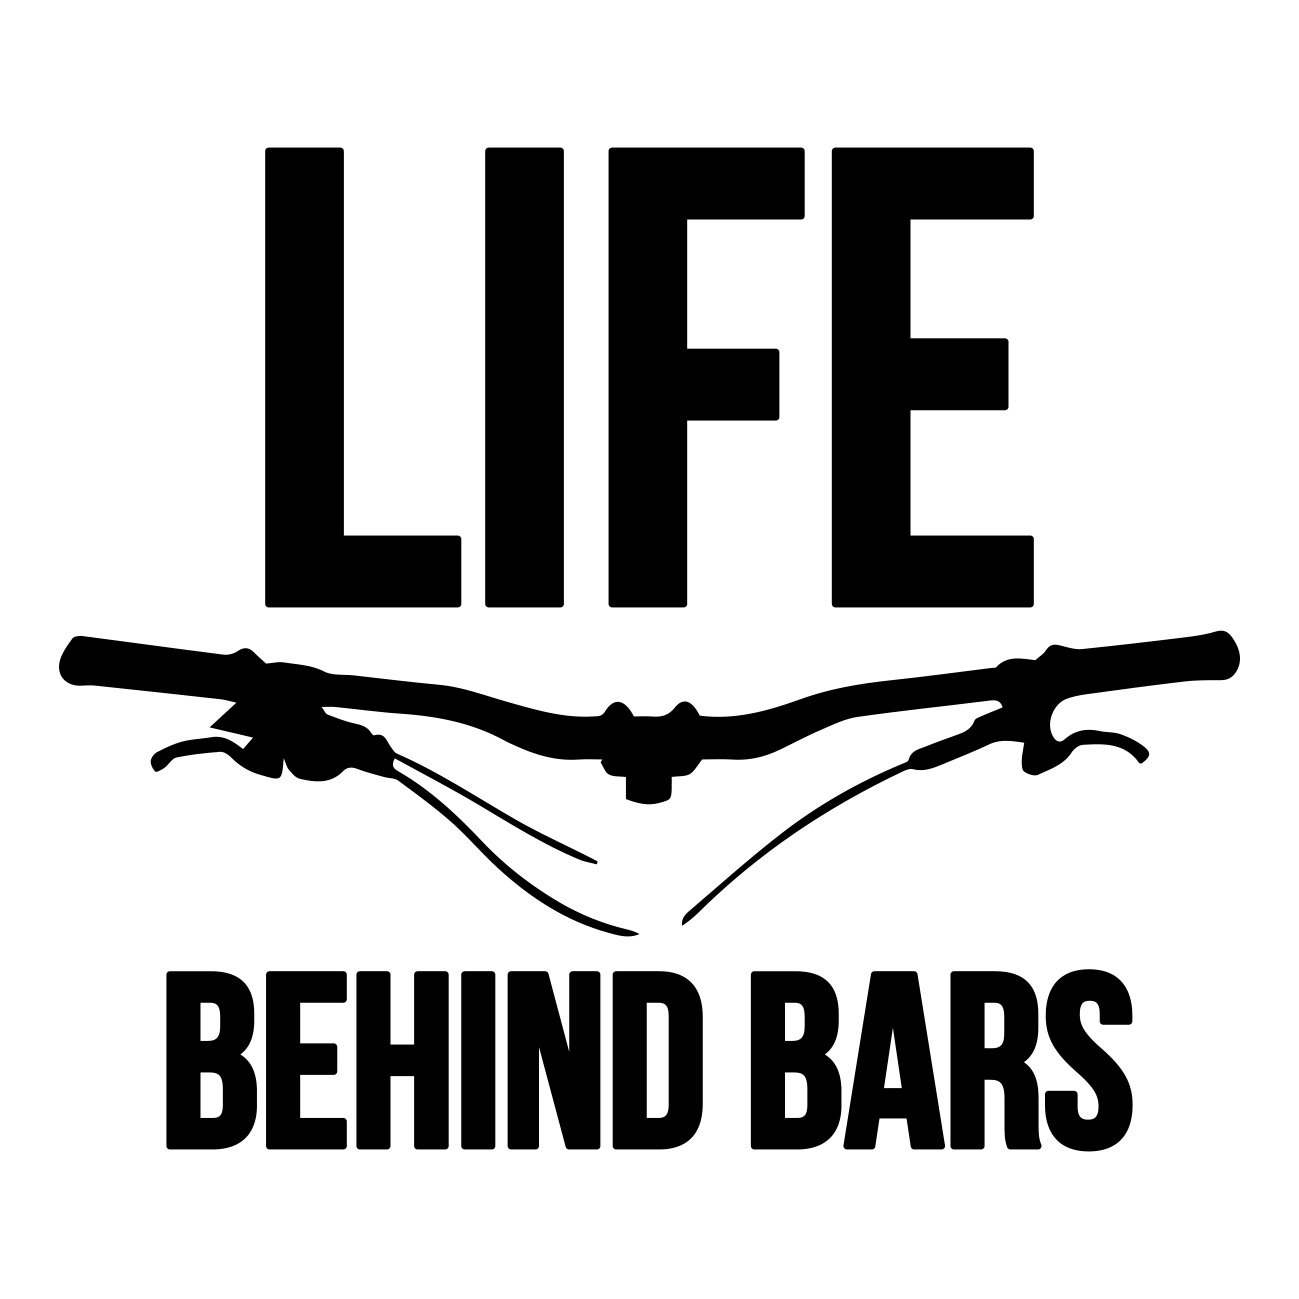 life behind bars